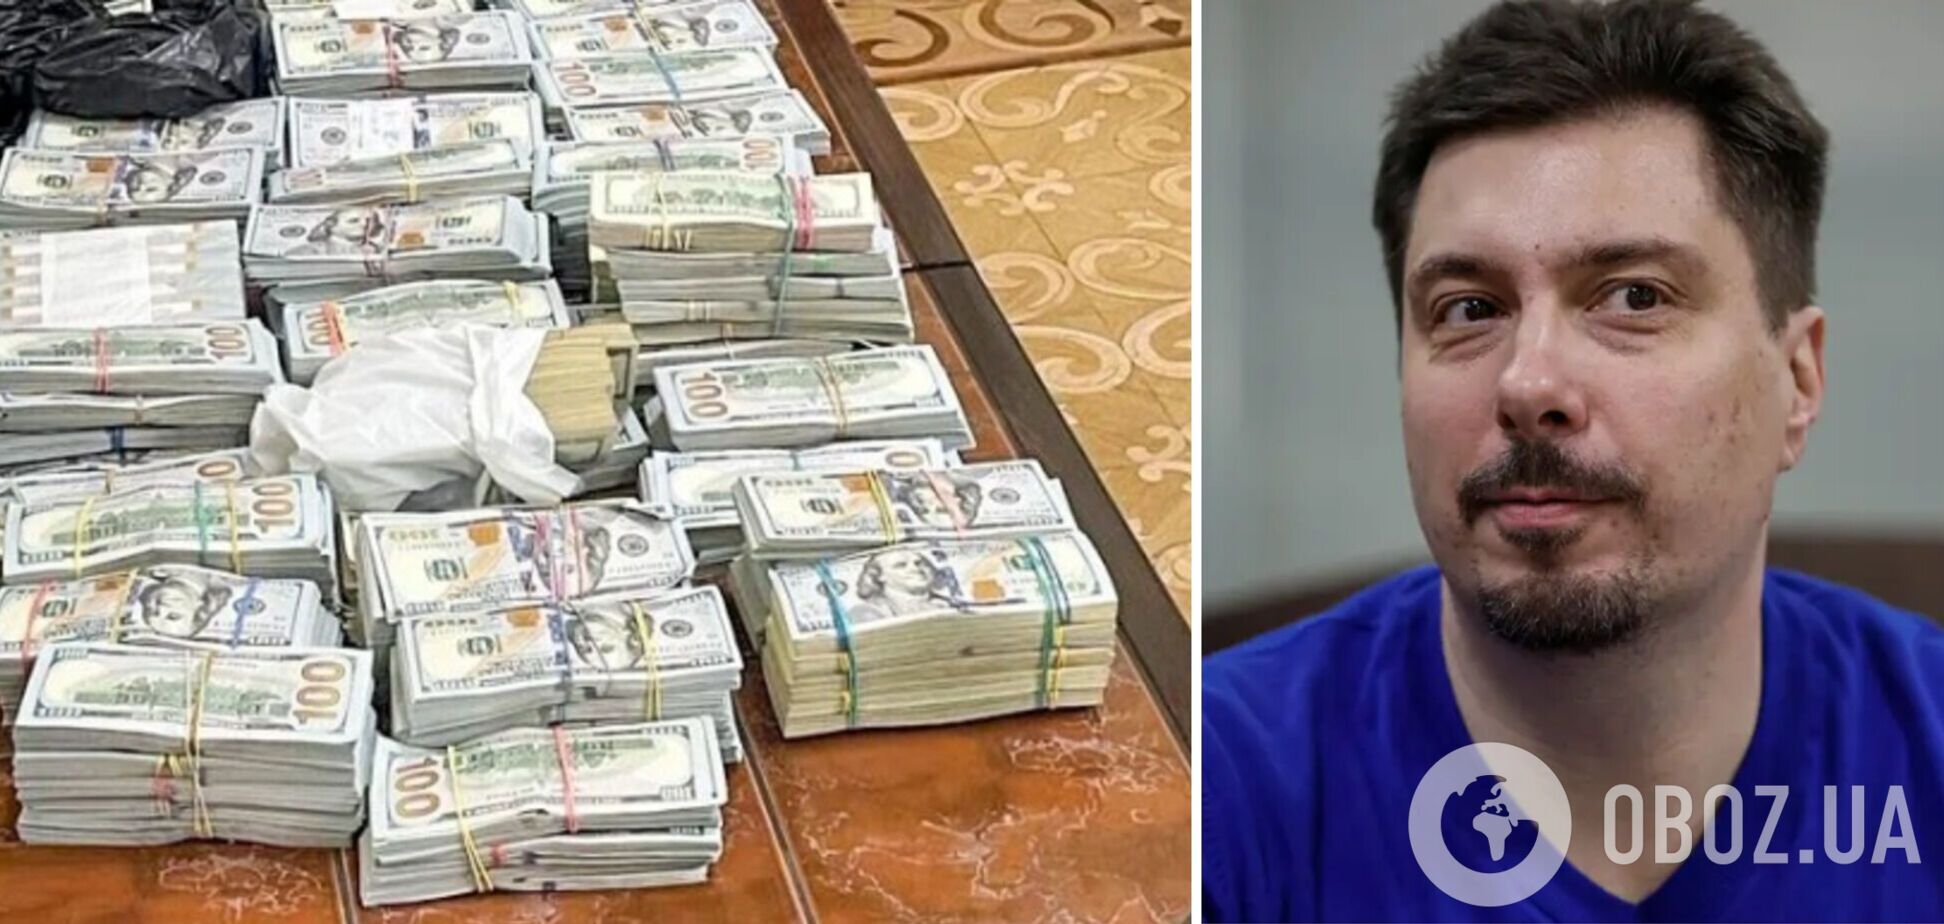 'Це гроші моїх друзів': ексголова Верховного суду Князєв стверджує, що знайдені у нього майже пів мільйона доларів не його